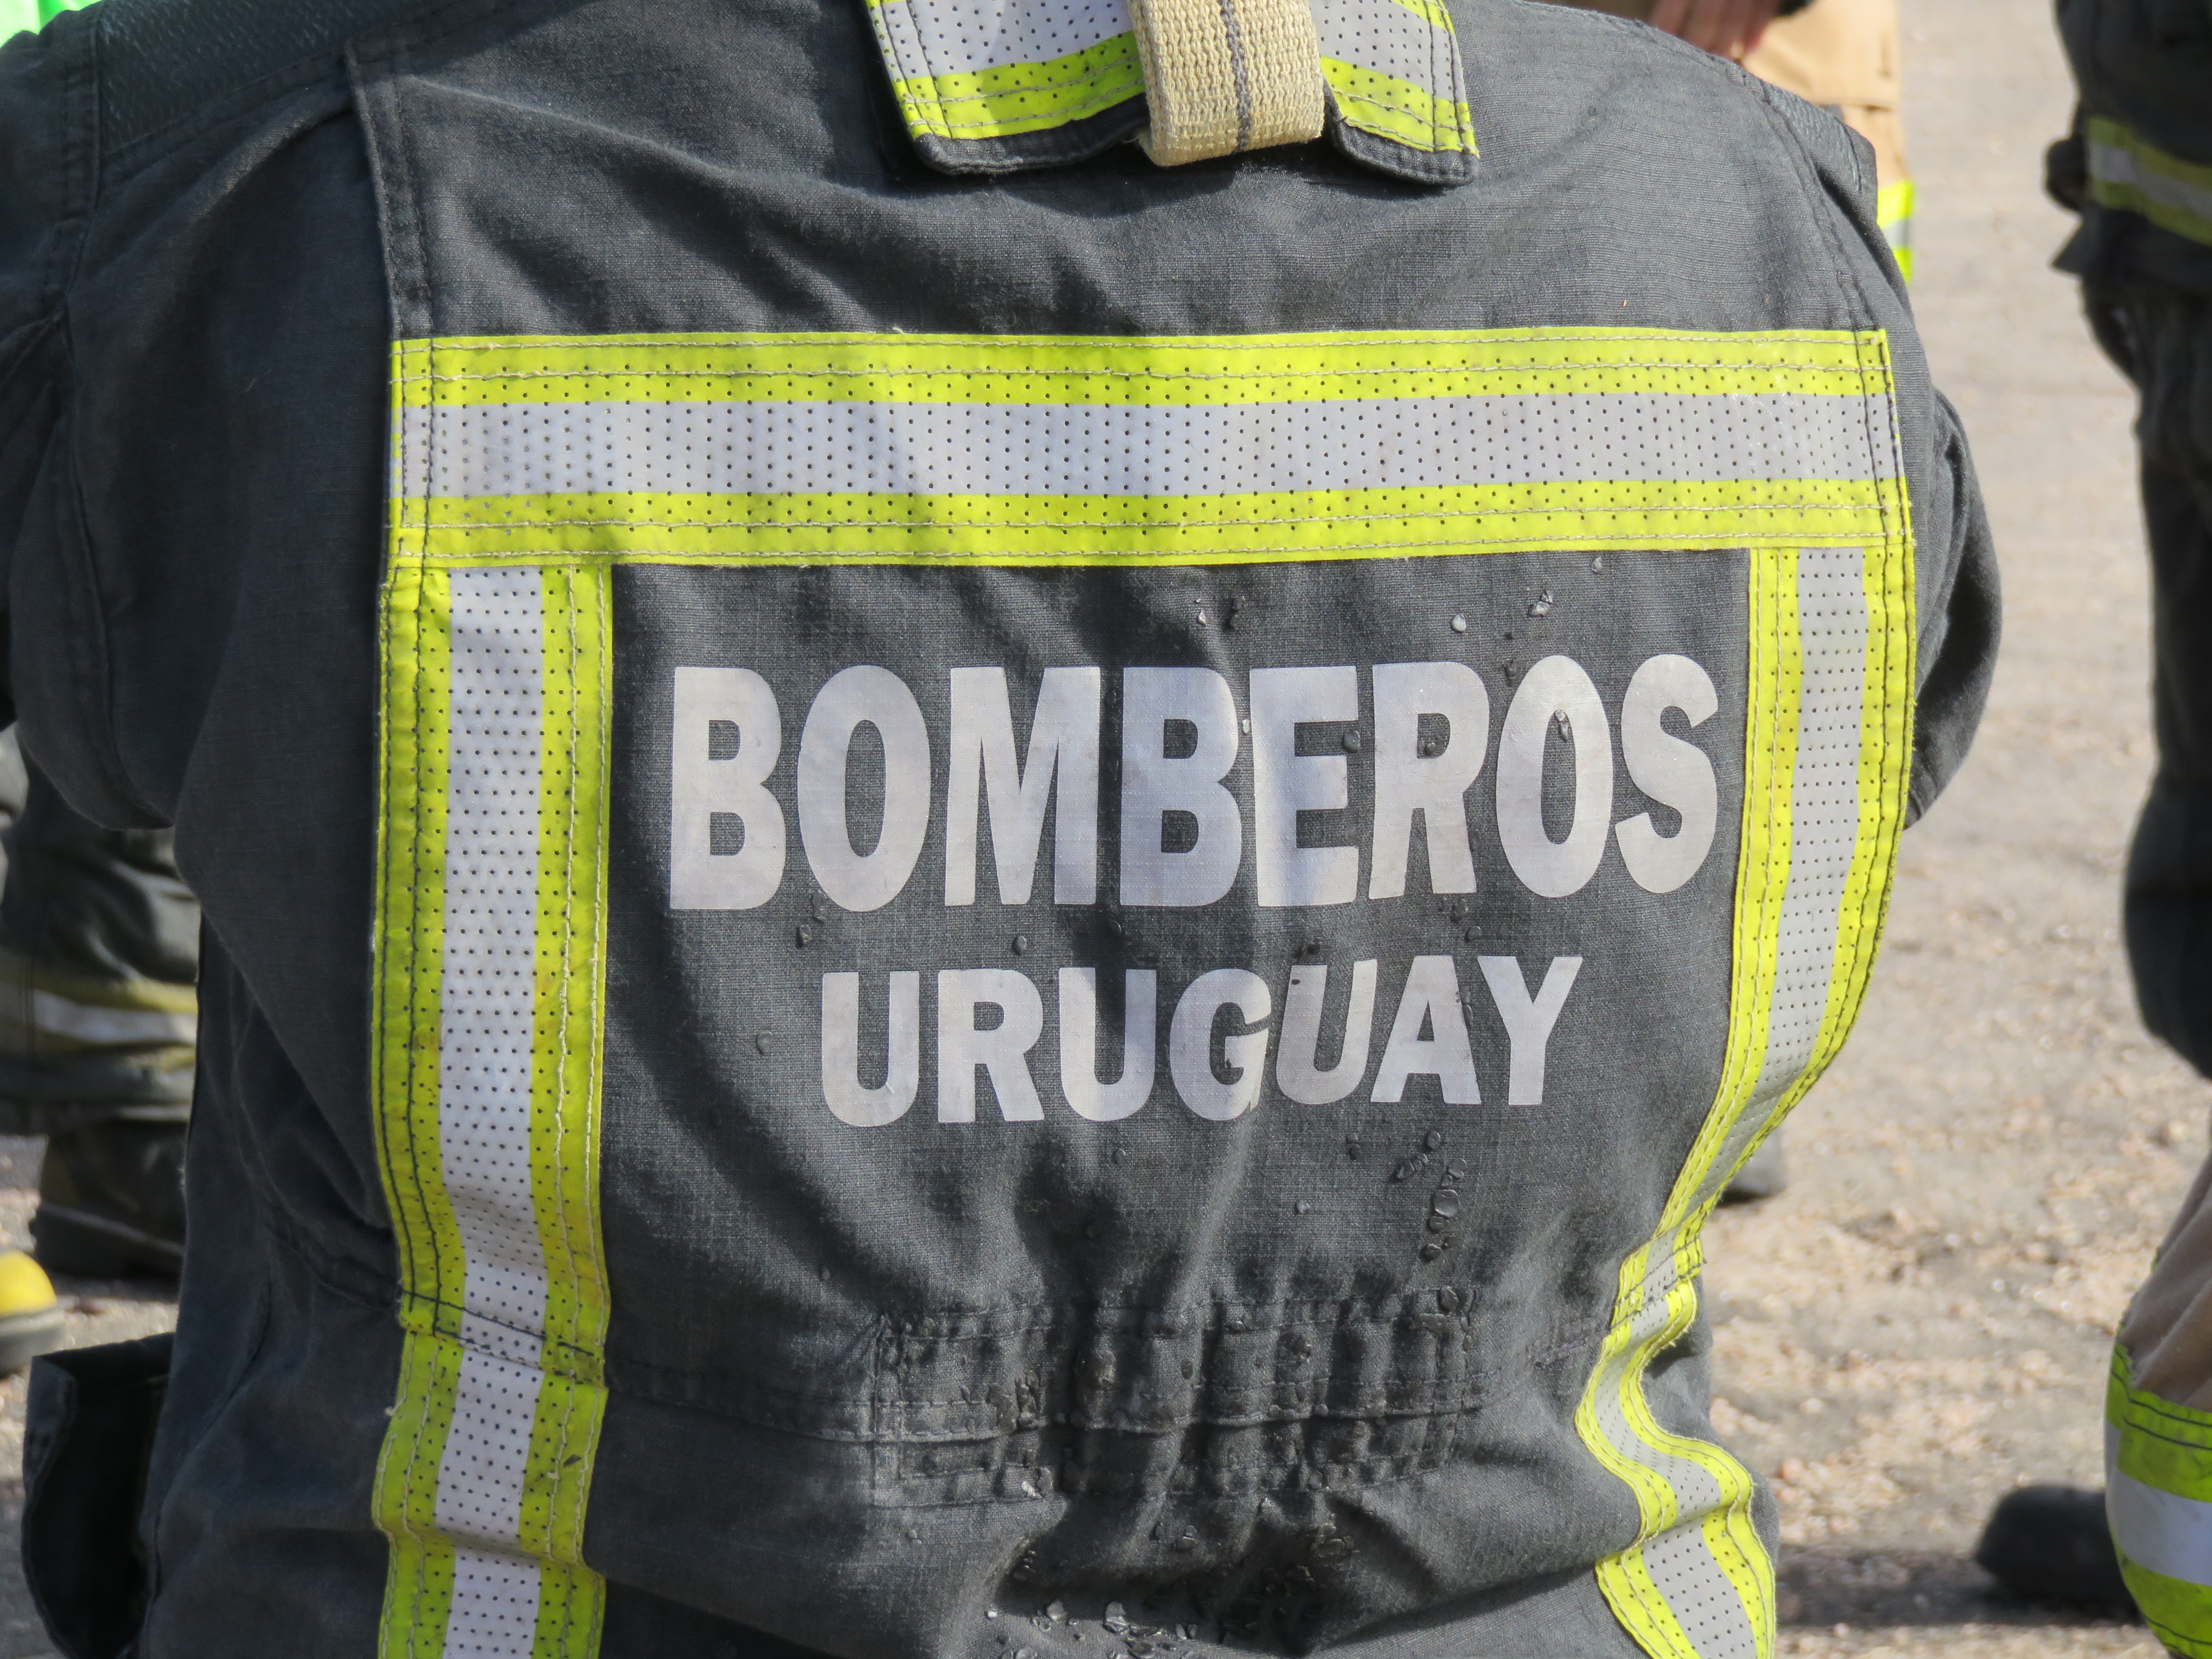 IMG_20230511_3785.jpg - El pasado jueves 11 de mayo culminó la &#034;Capacitación para bomberos sobre manejo de incidentes relacionados con la movilidad eléctrica&#034; en donde se capacitaron a 25 bomberos en la Base Aérea de Santa Bernardina del departamento de Durazno. Esta capacitación es la continuación del primer curso regional que organizó la plataforma MOVE del Programa de la Naciones Unidas para el Medio Ambiente a finales de 2022 en Paraguay, donde participaron y se formaron dos bomberos instructores de Uruguay.